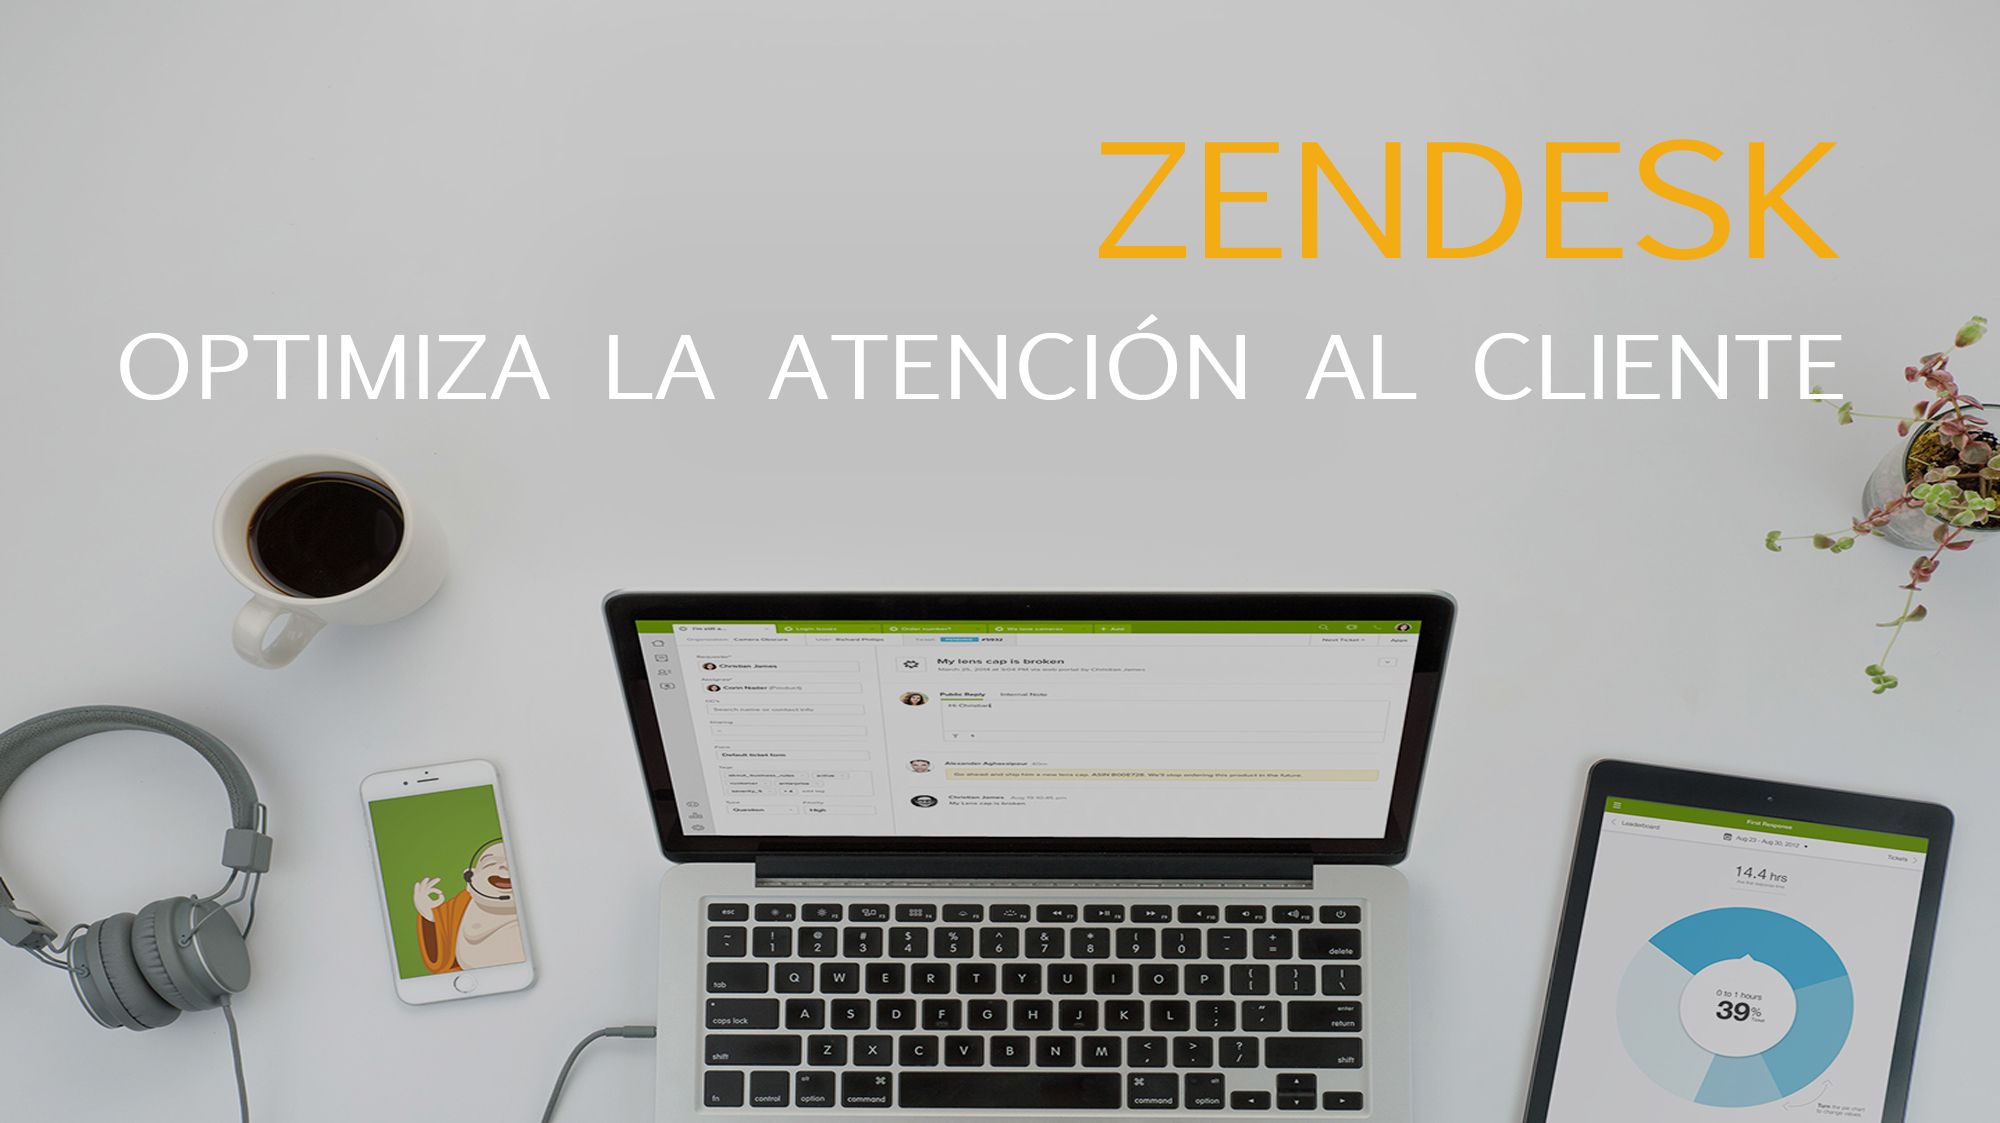 Zendesk para optimizar la atención al cliente